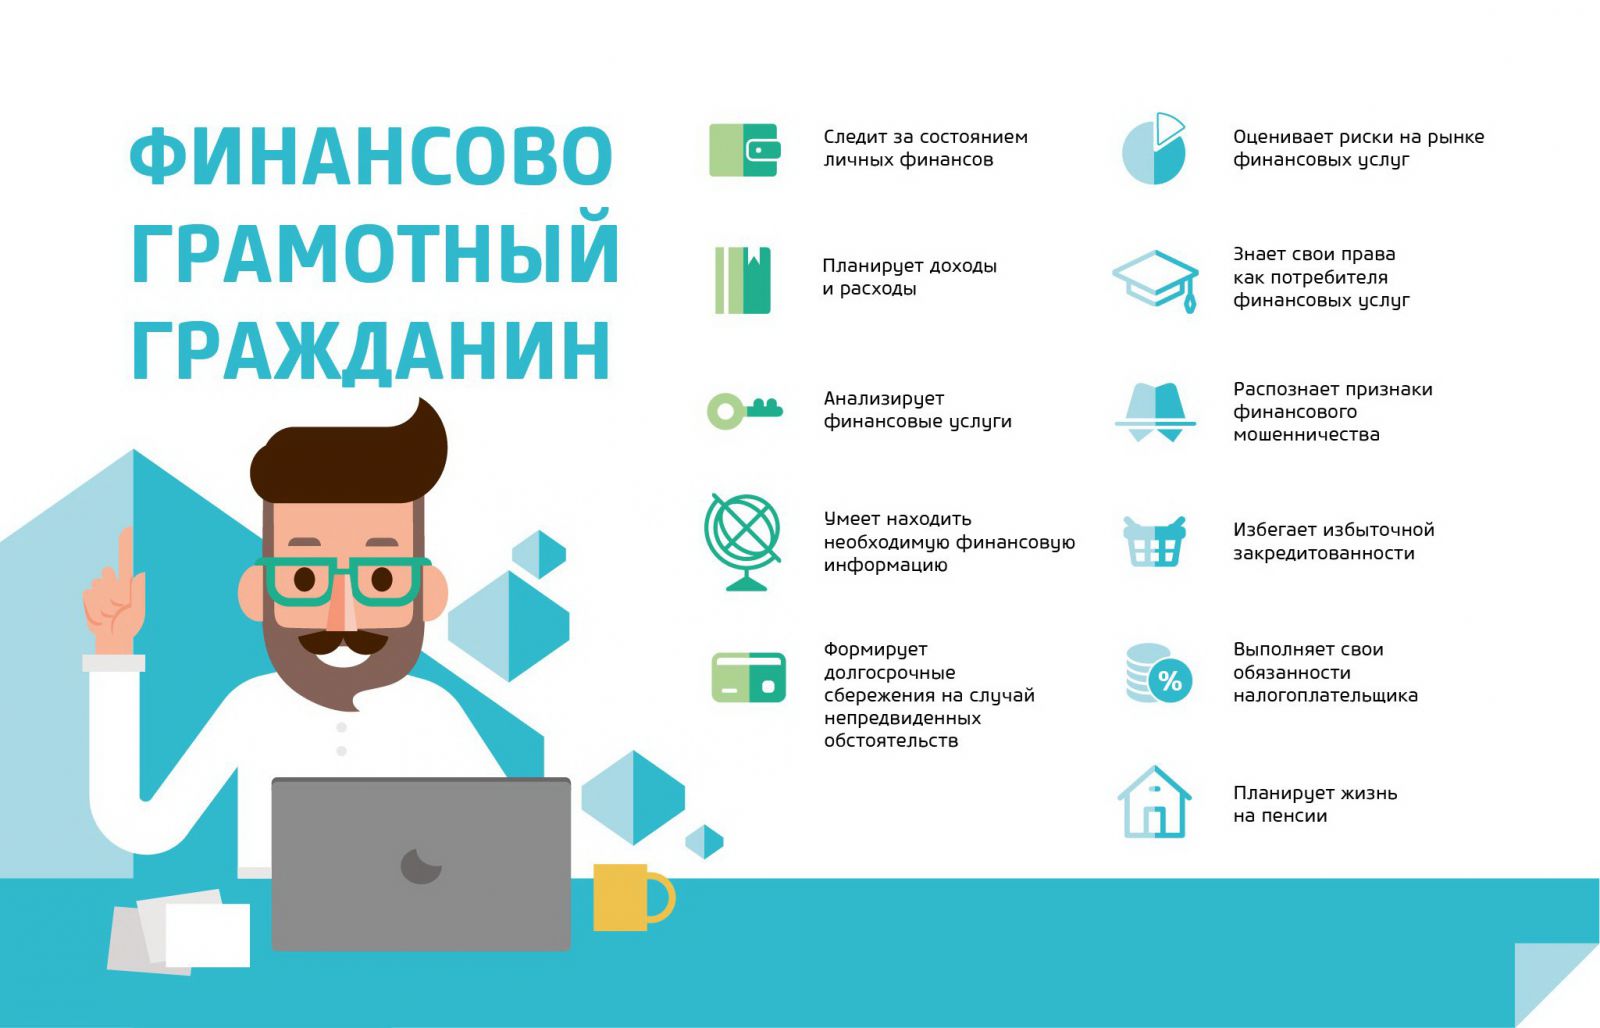 Содействие повышению уровня финансовой грамотности населения и развитию финансового образования в Российской Федерации.